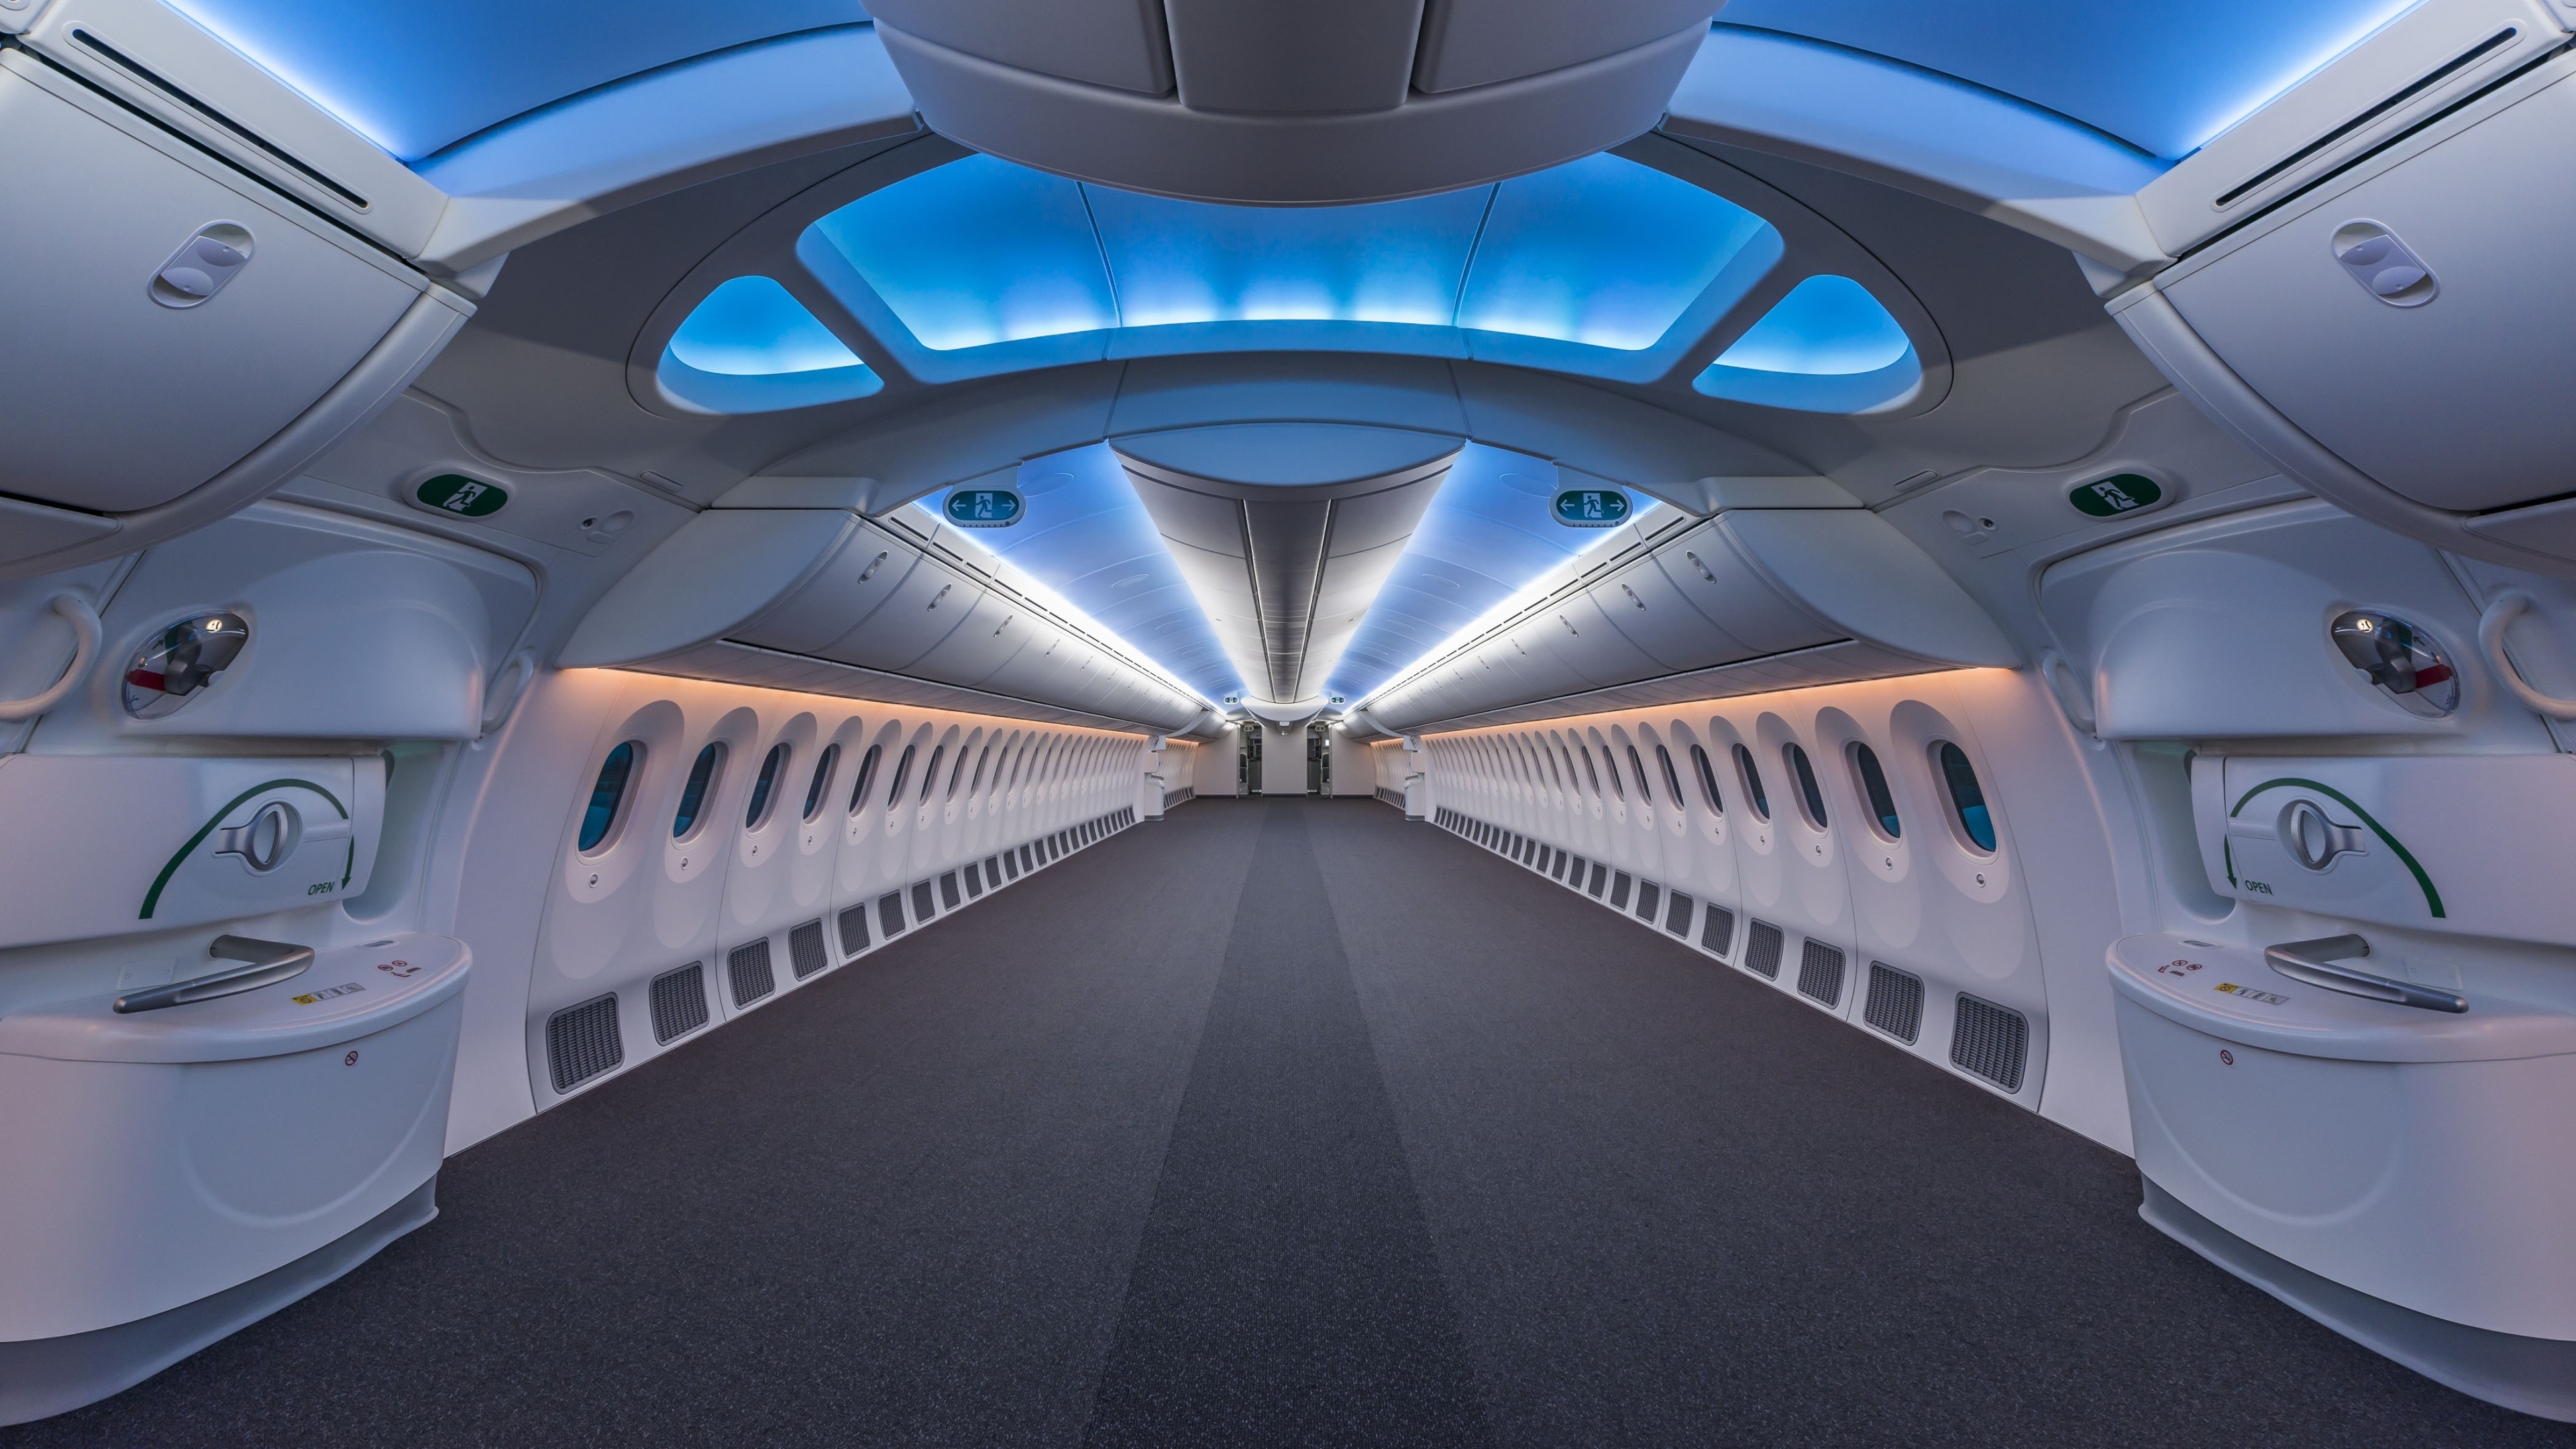 Symmetry Interior Modern Airplane Boeing Jet Fighter Window Luxury Boeing 787 Cyan Blue 3840x2160